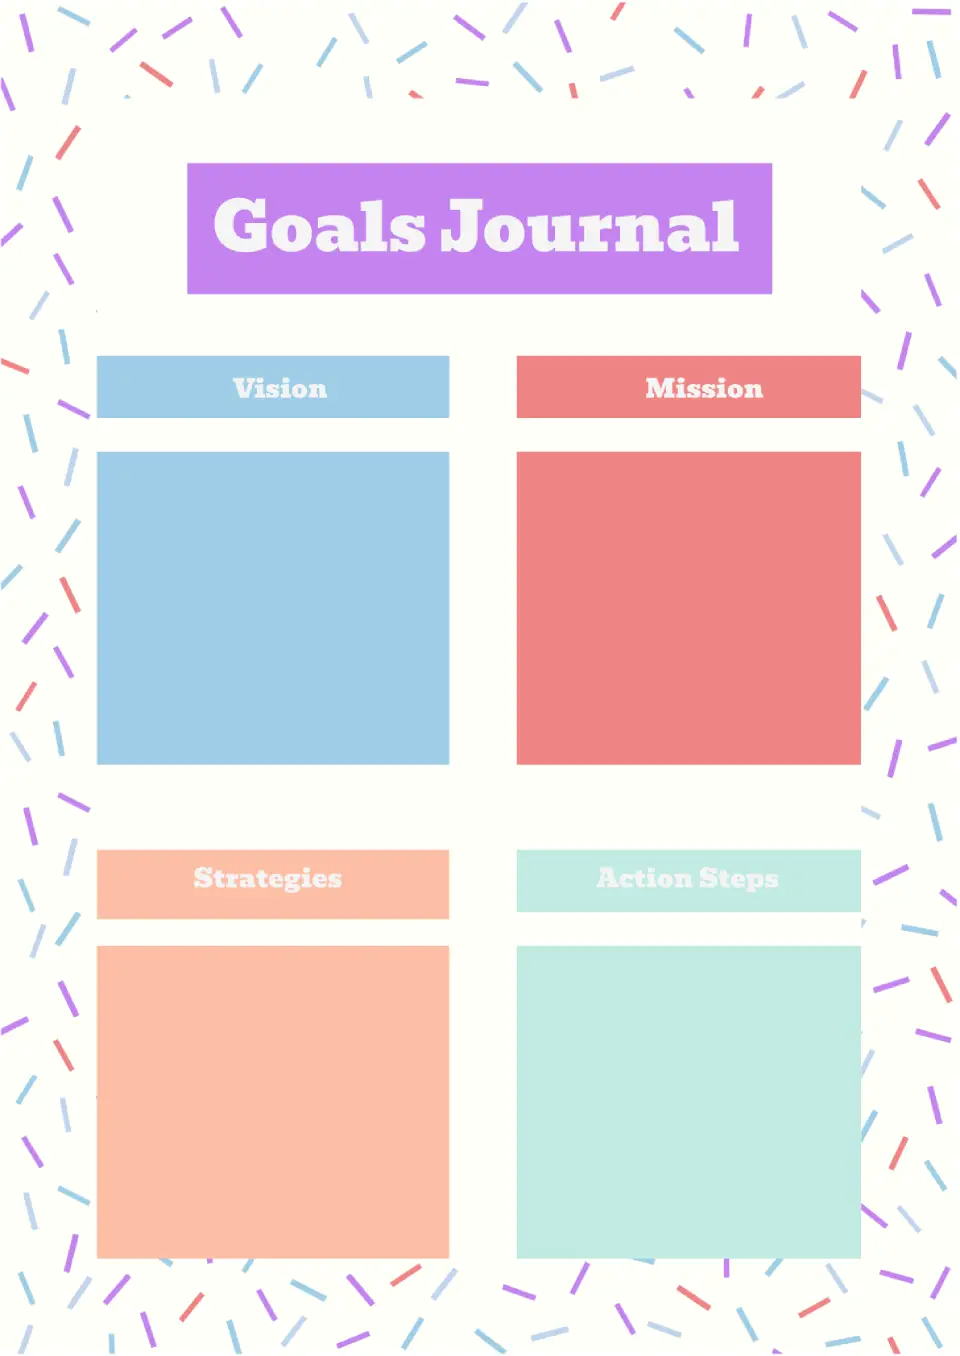 Goals Journal Template for Google Docs